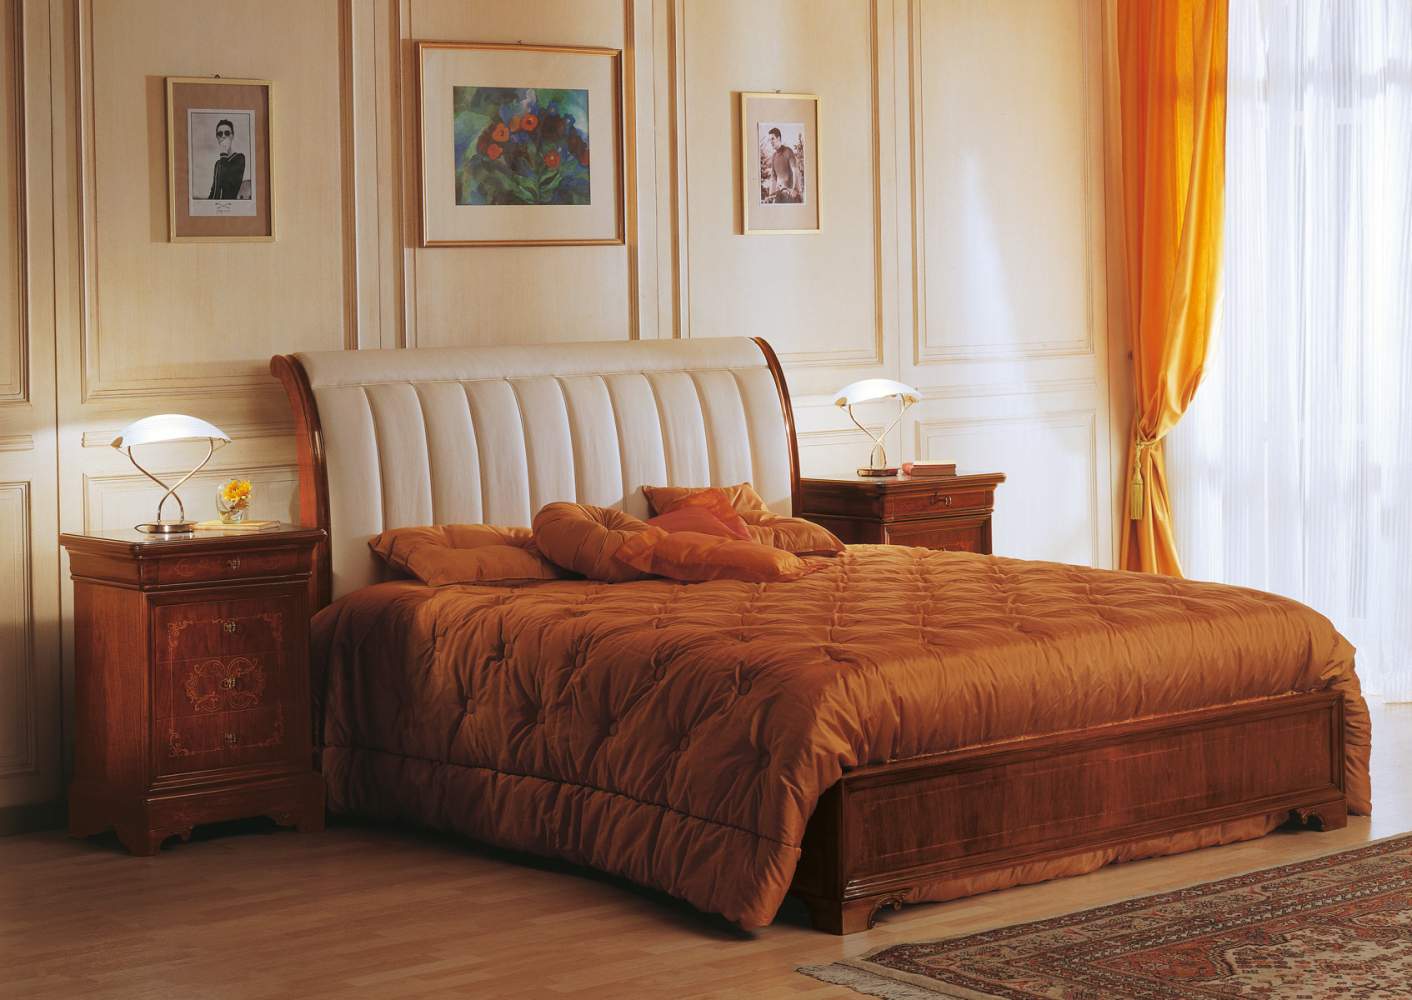 Camera 800 francese realizzata secondo i canoni degli stili classici, in legno di noce intarsiato